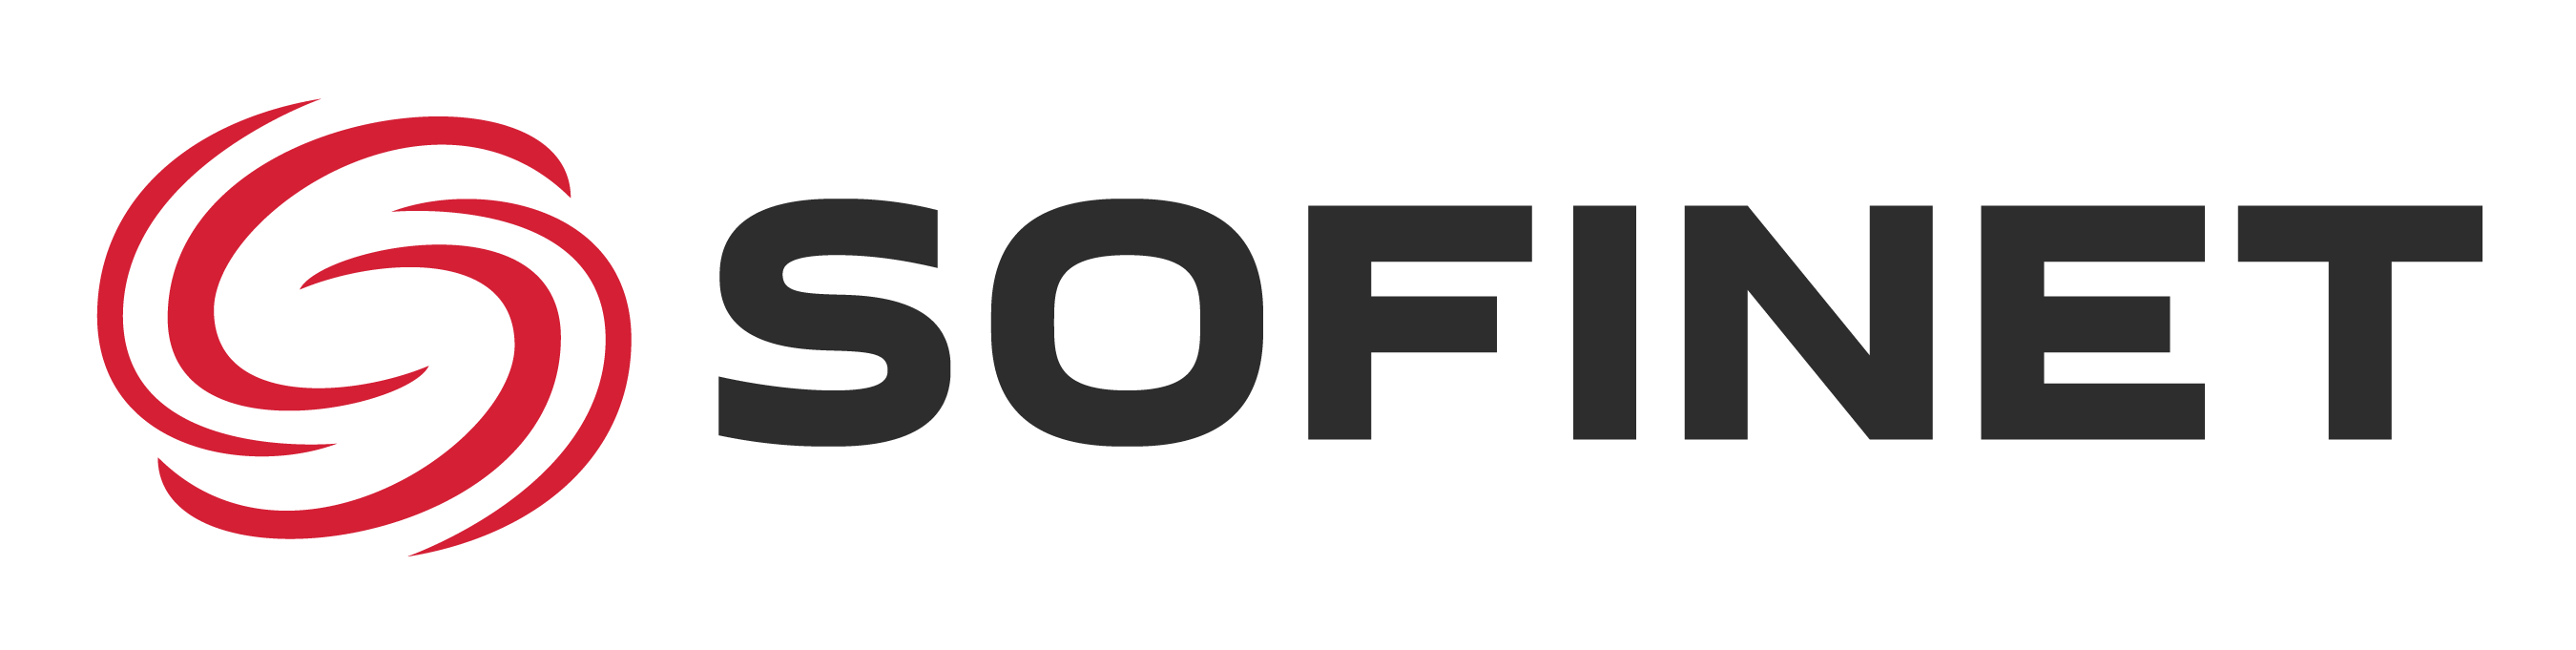 Оптивера — авторизованный партнёр Sofinet